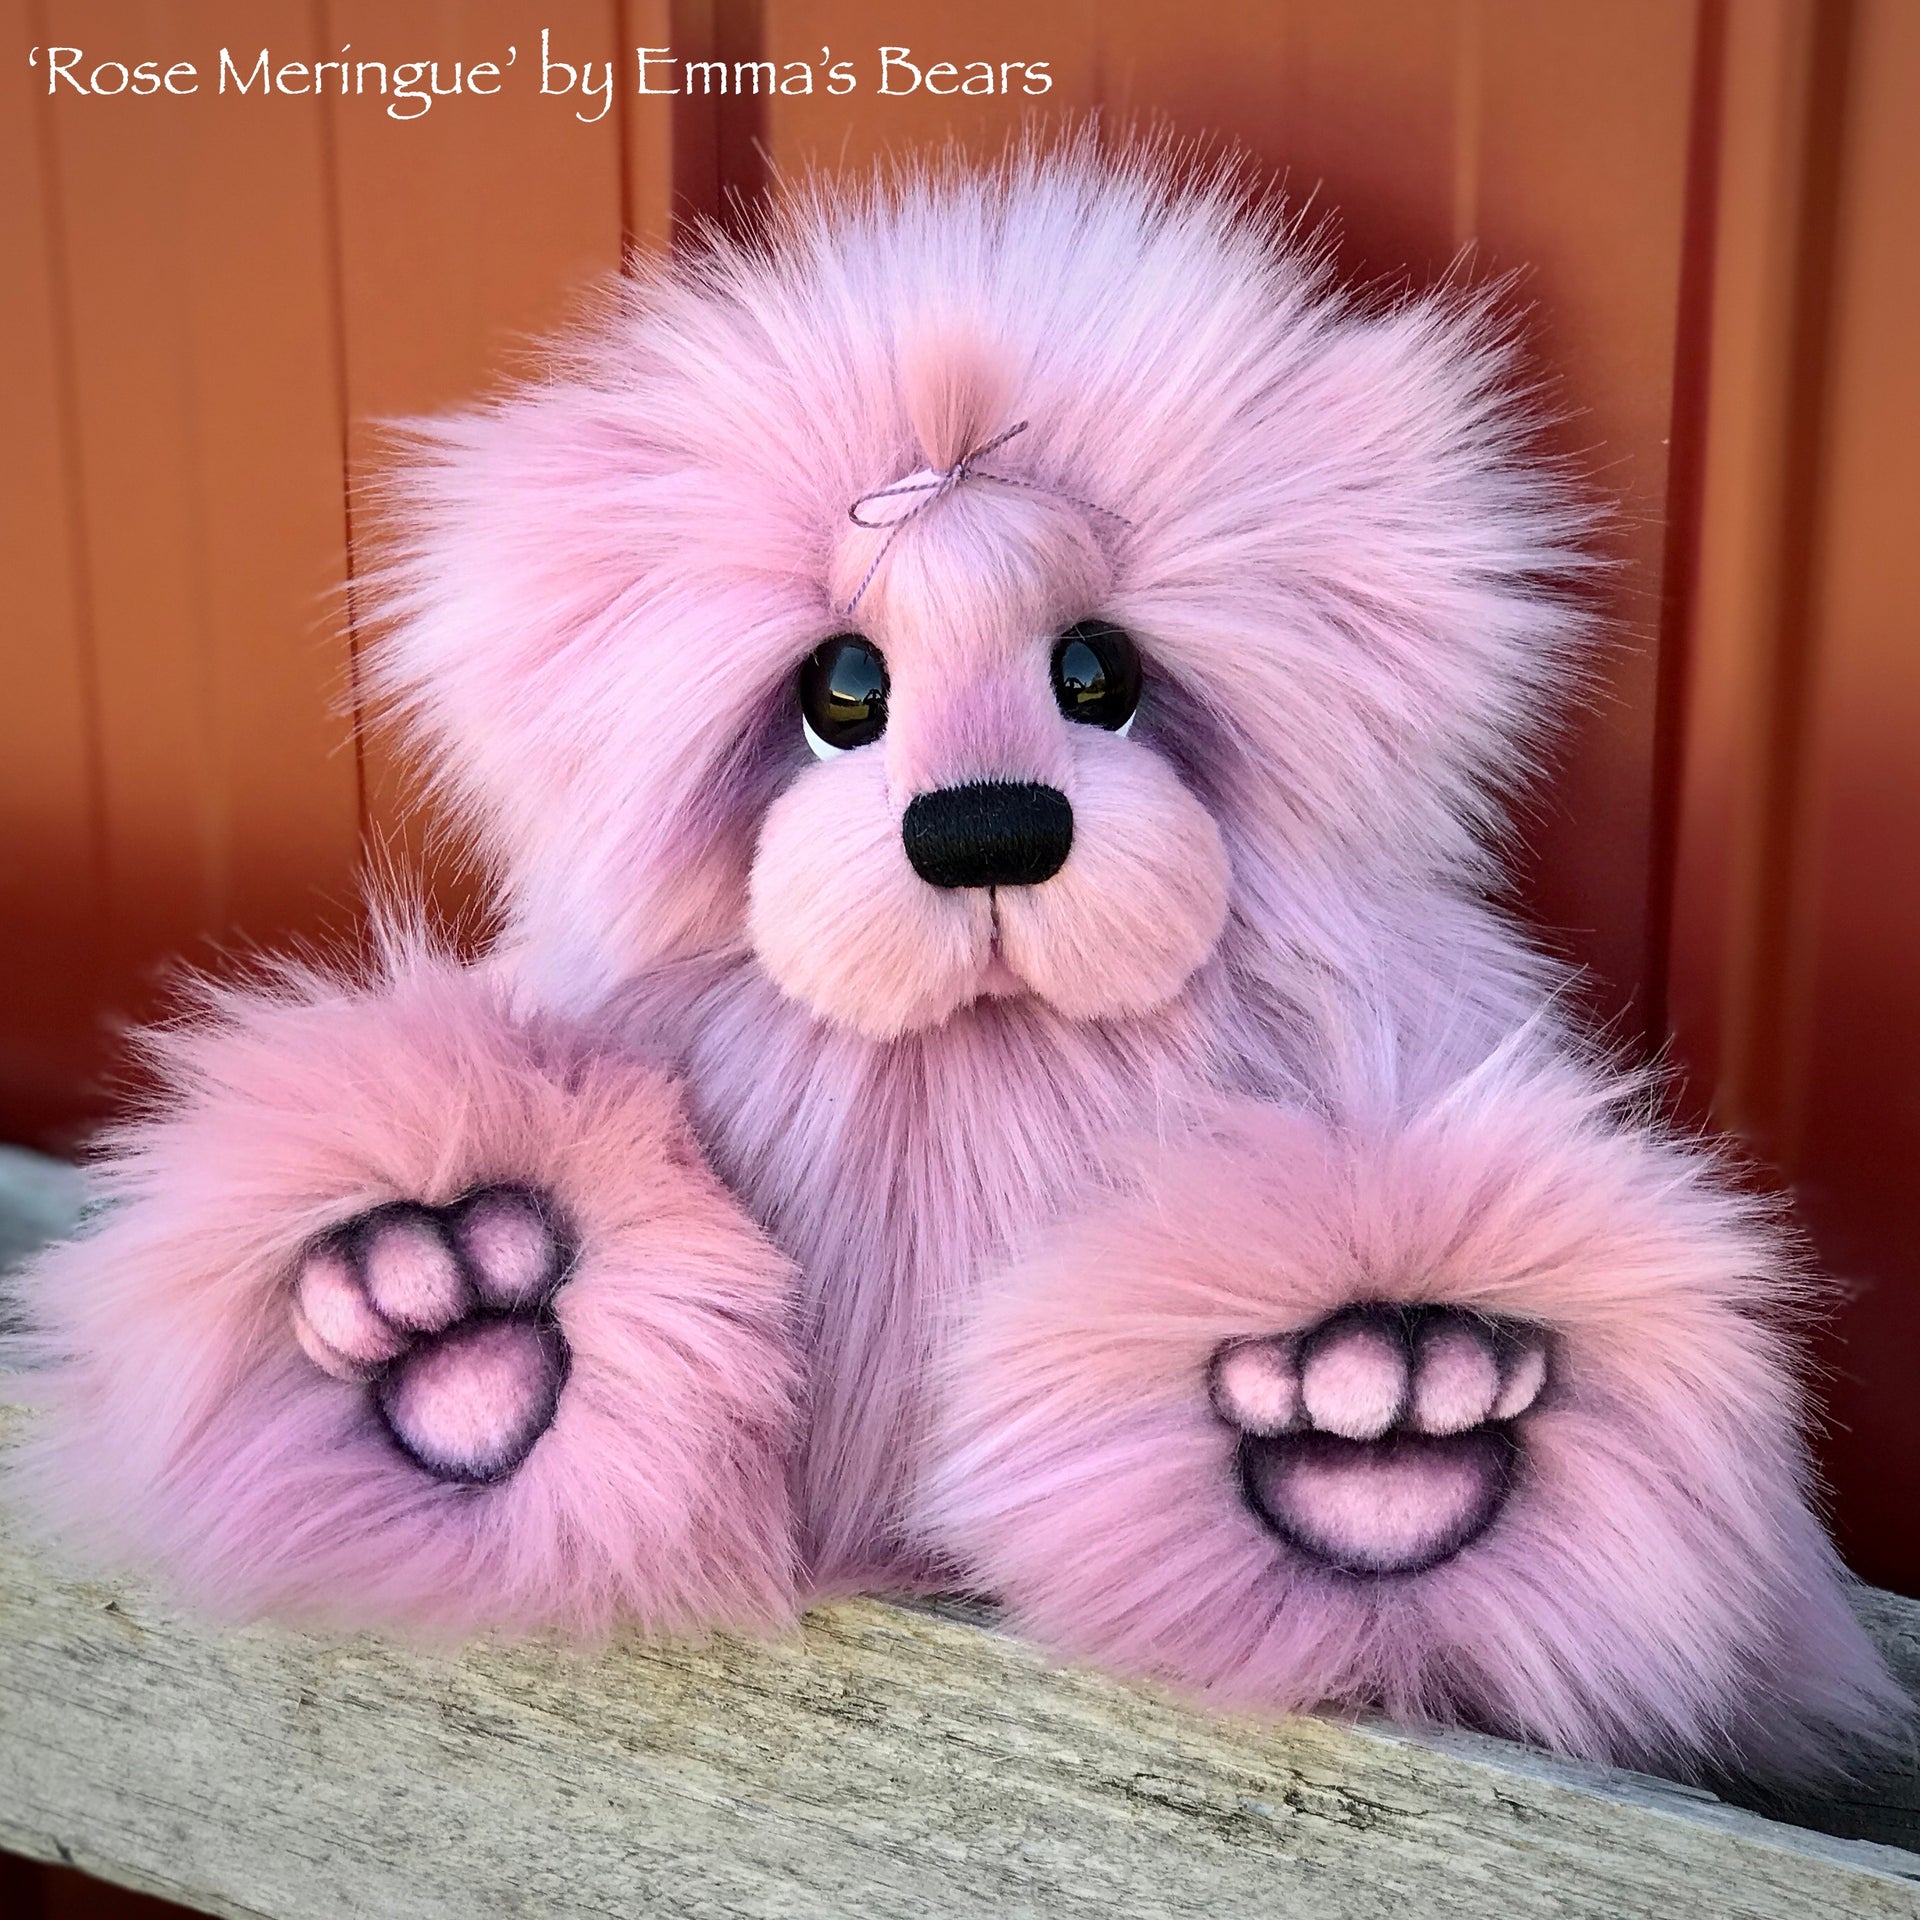 Rose Meringue - 13" faux fur Artist Bear by Emma's Bears - OOAK